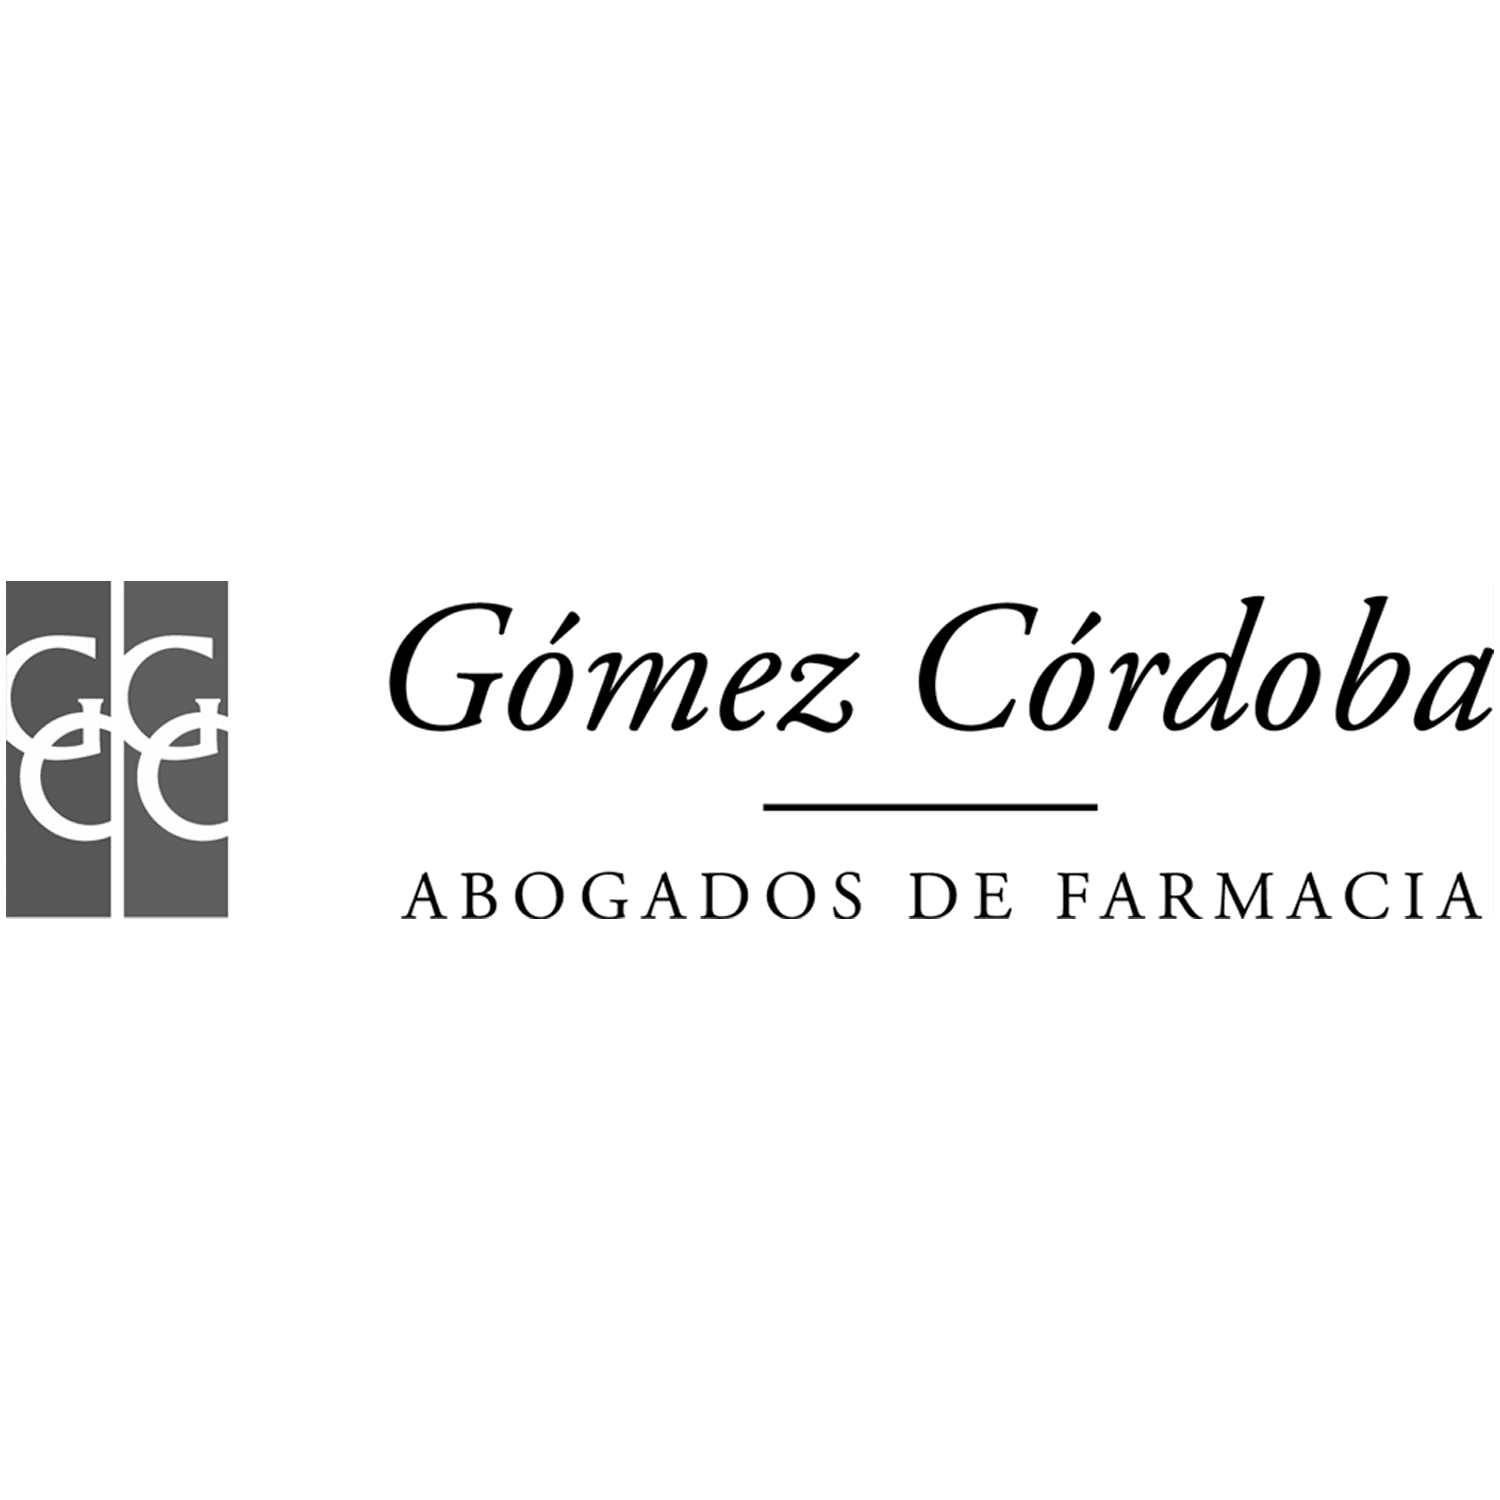 Gómez Córdoba Abogados de Farmacia